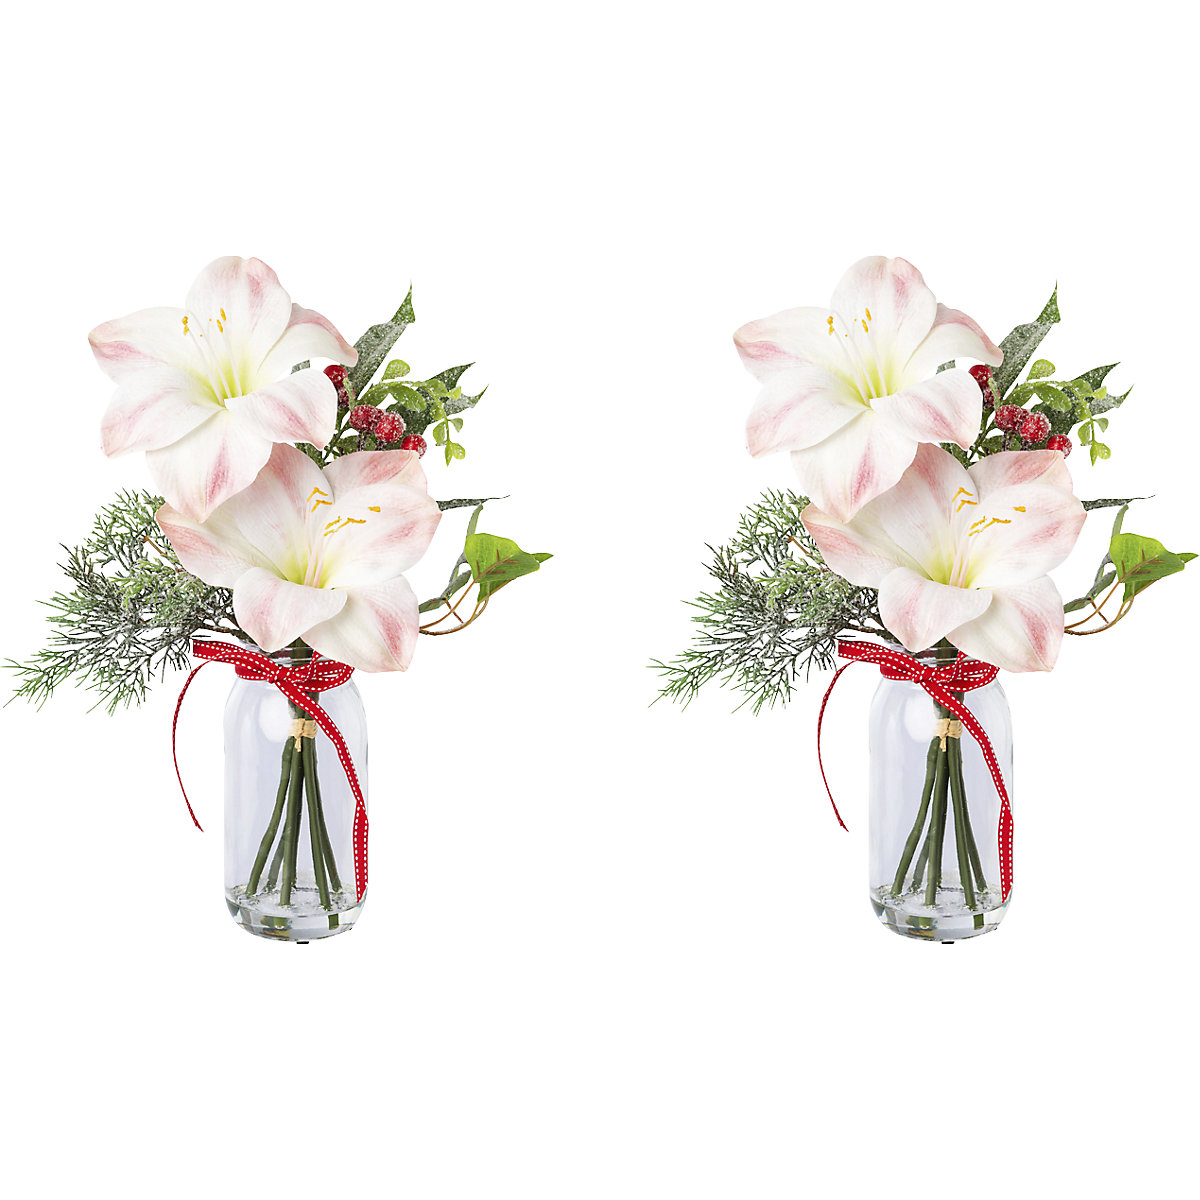 Amaryllis-arrangement in glas, roze